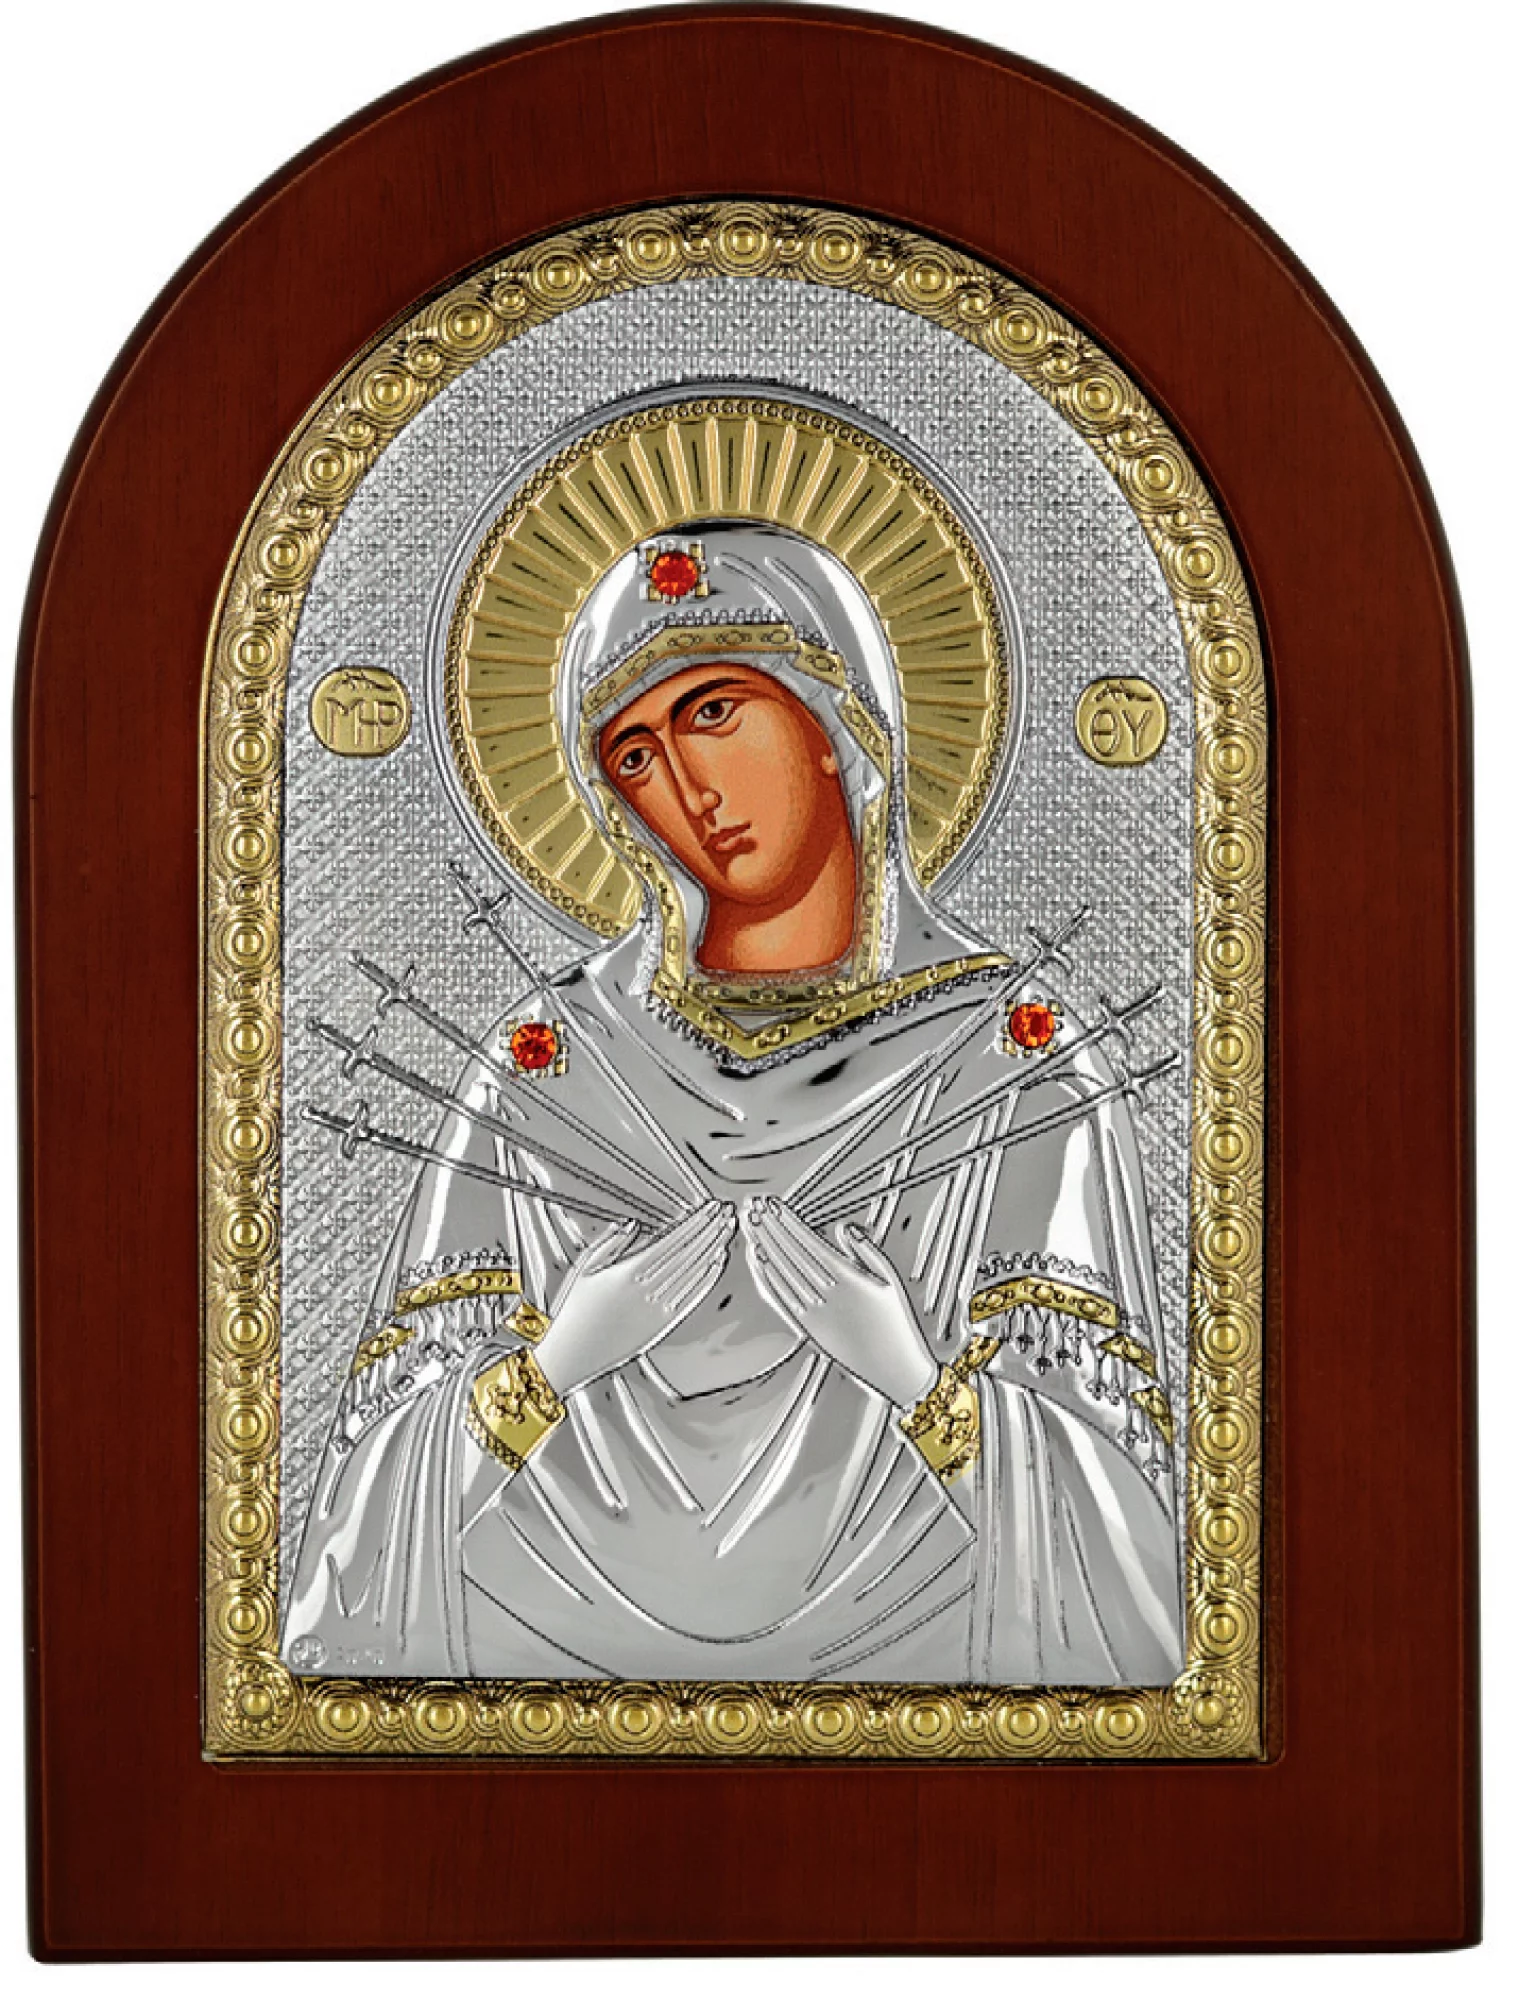 Икона Богородица "Семистрельная" 100х140 мм - 1101682 – изображение 1